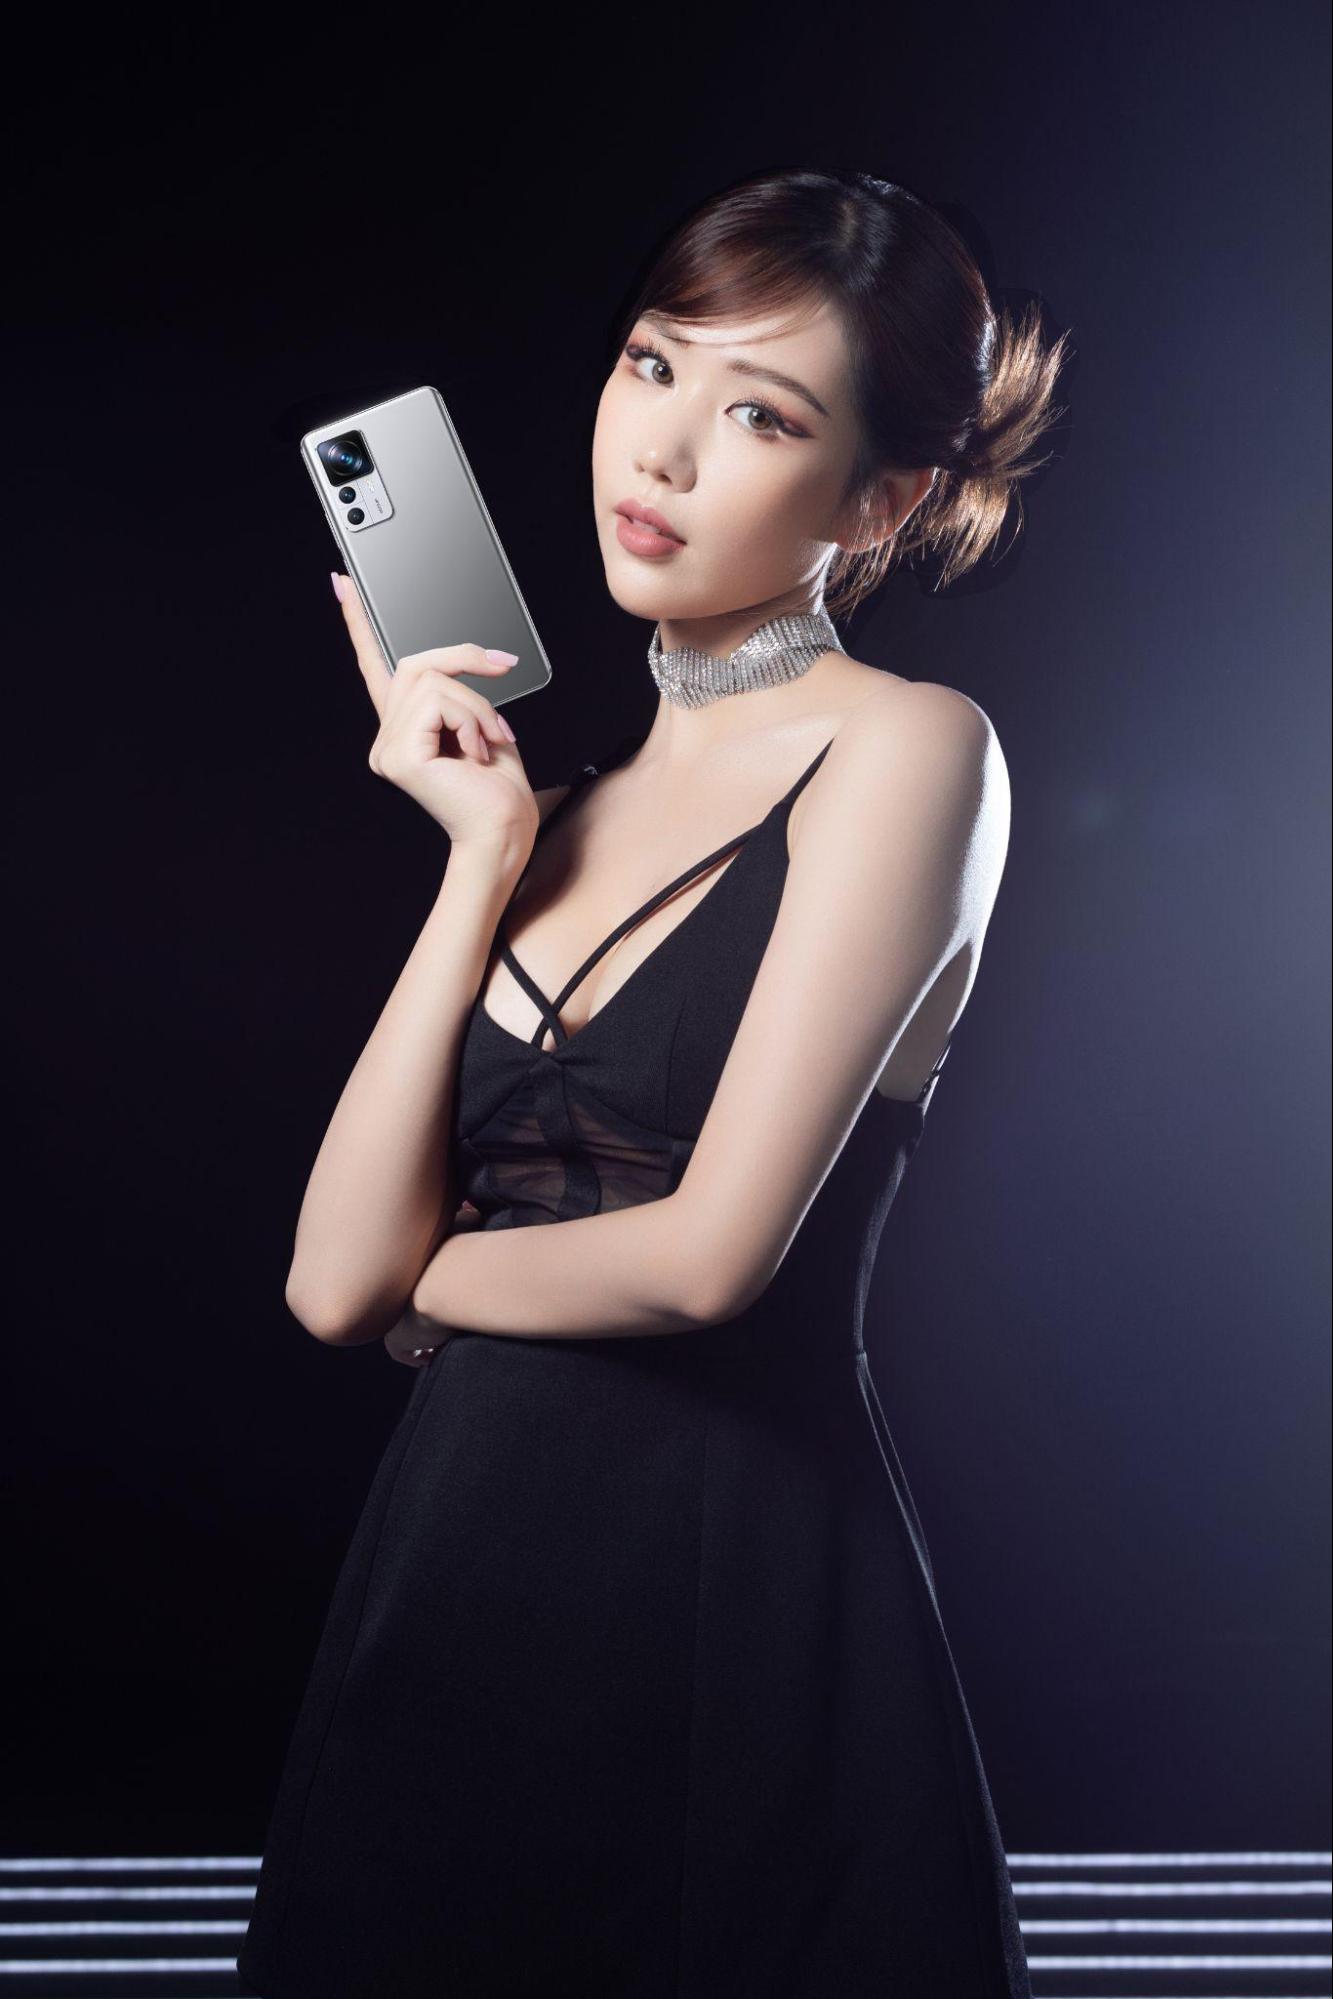 Ngày cuối để sở hữu Xiaomi 12T Series với ưu đãi lên đến 4 triệu đồng và dàn line-up tại Đại nhạc hội "Vũ Trụ Xiaomi"